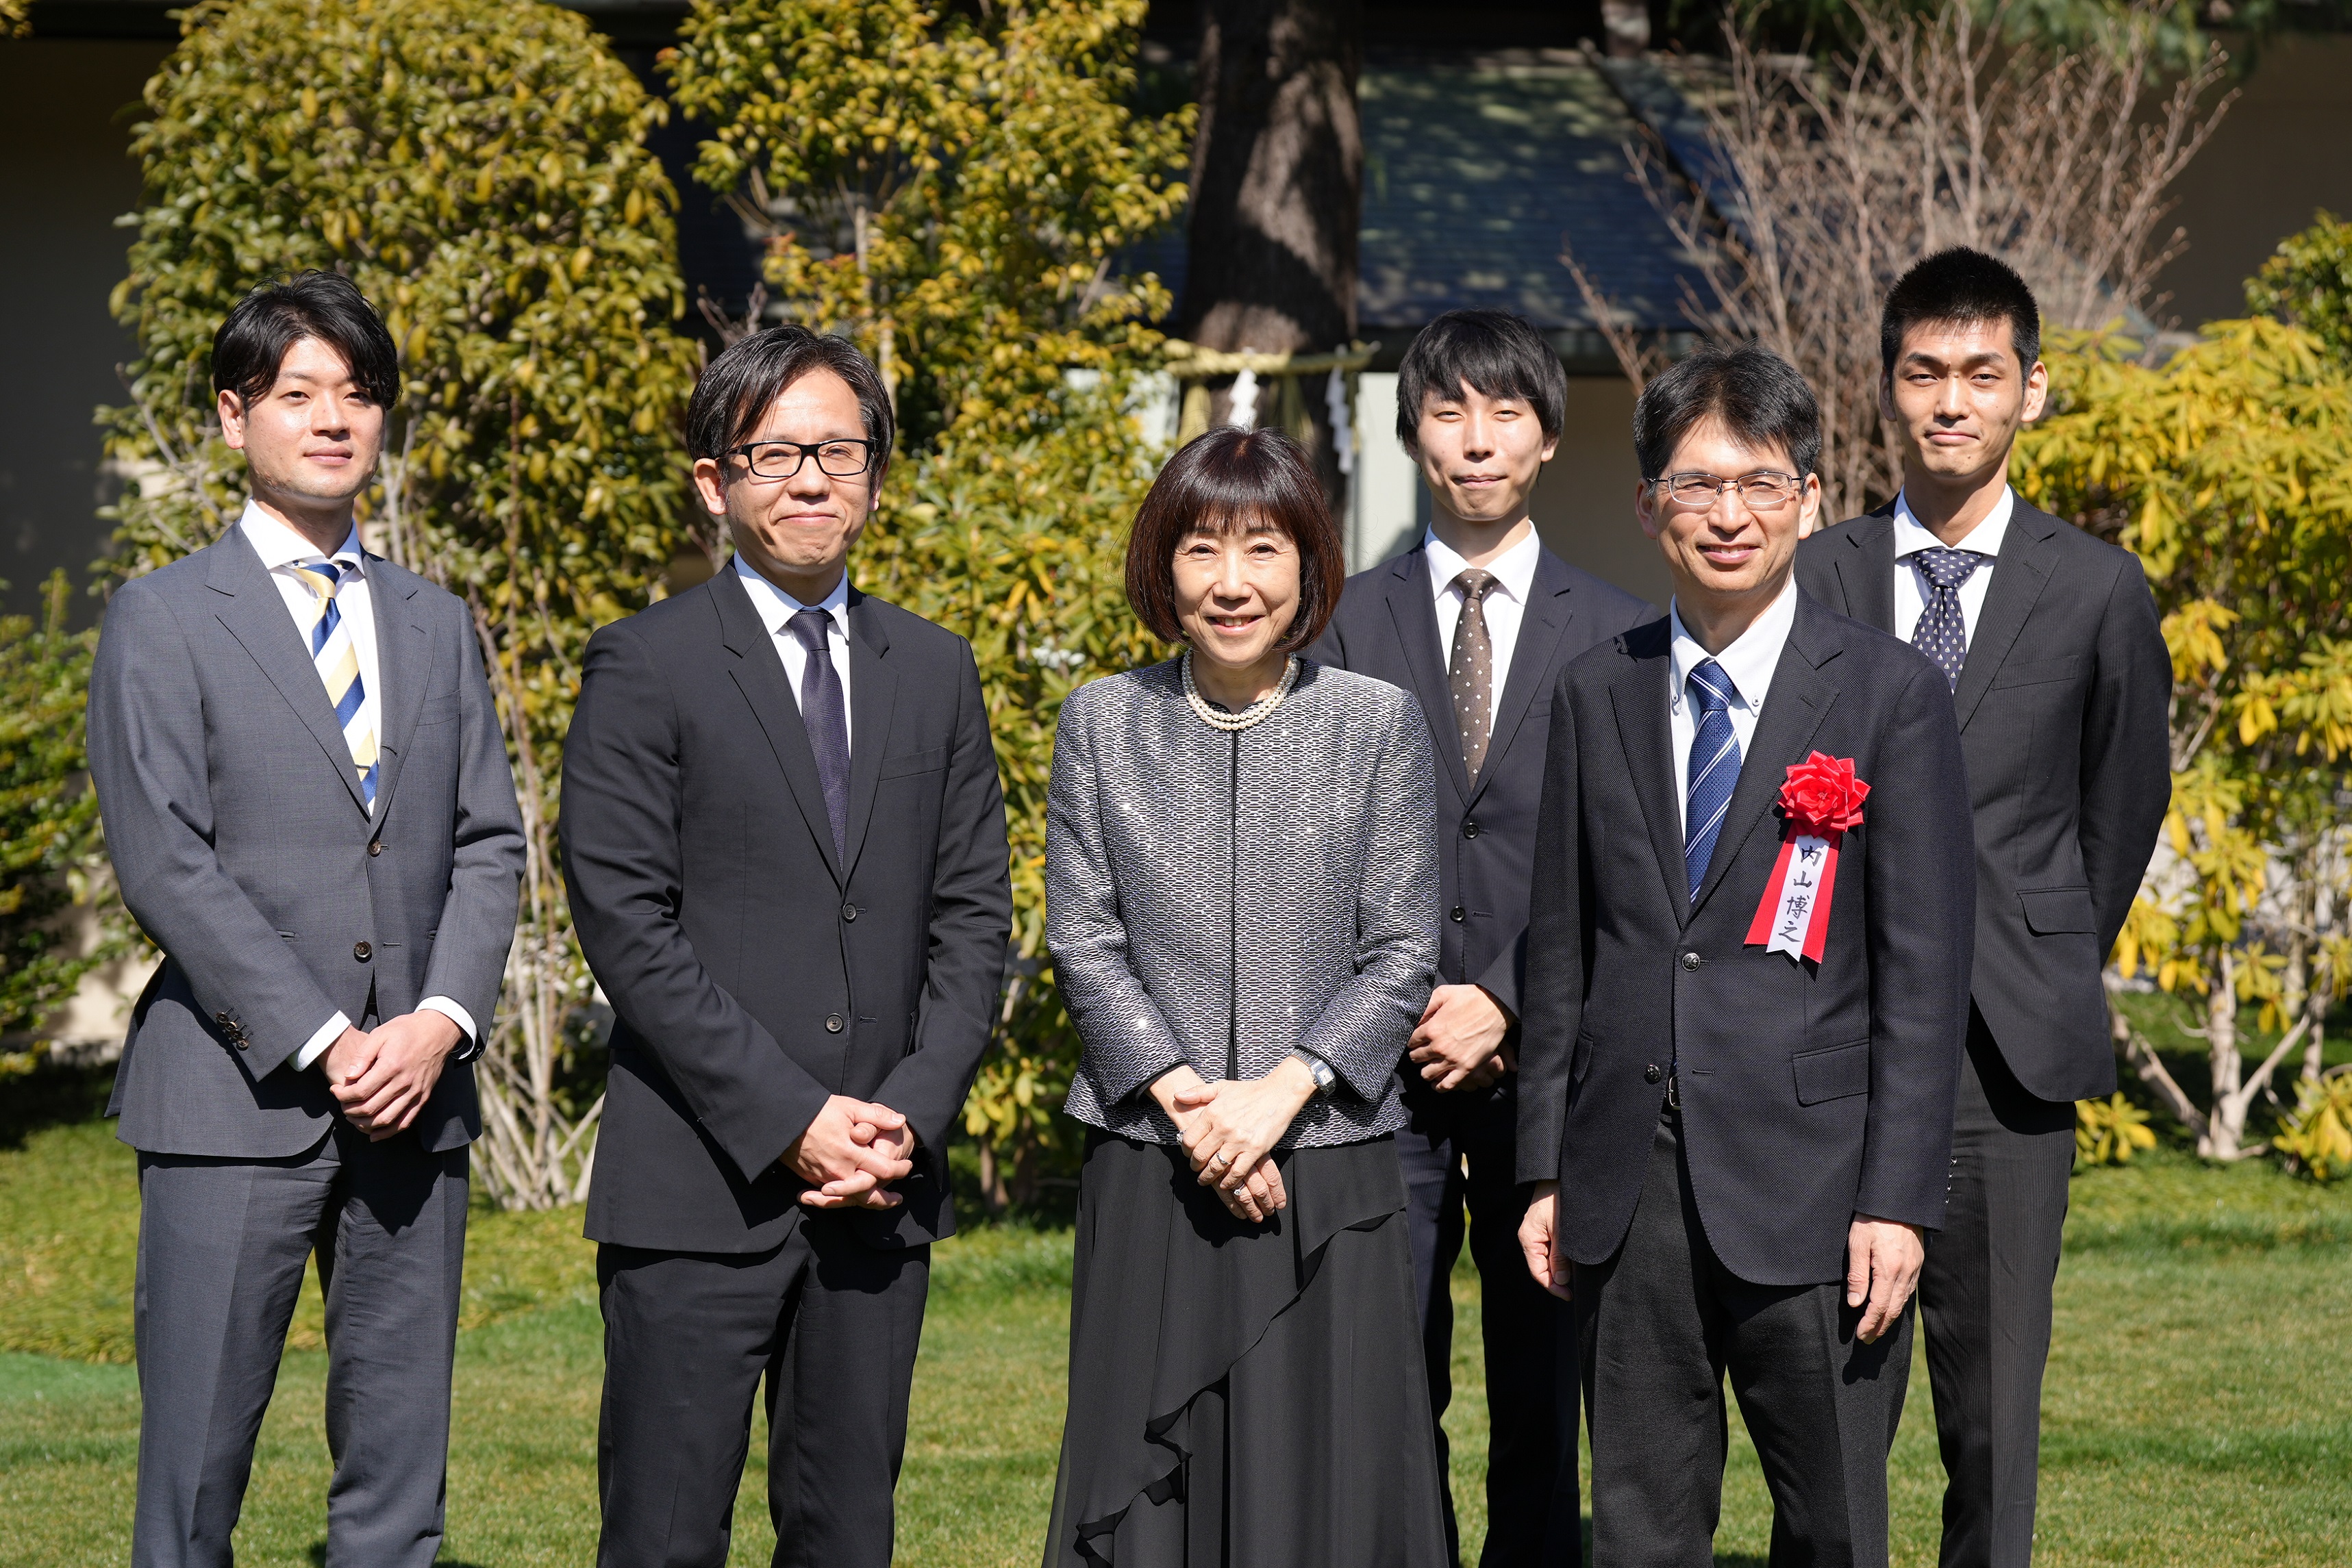 川本裕子総裁(人事院)、浅沼尚デジタル監、デジタル統括官、VRSチームメンバーが外で立って並んでいる集合写真。背景には木々が映っている。